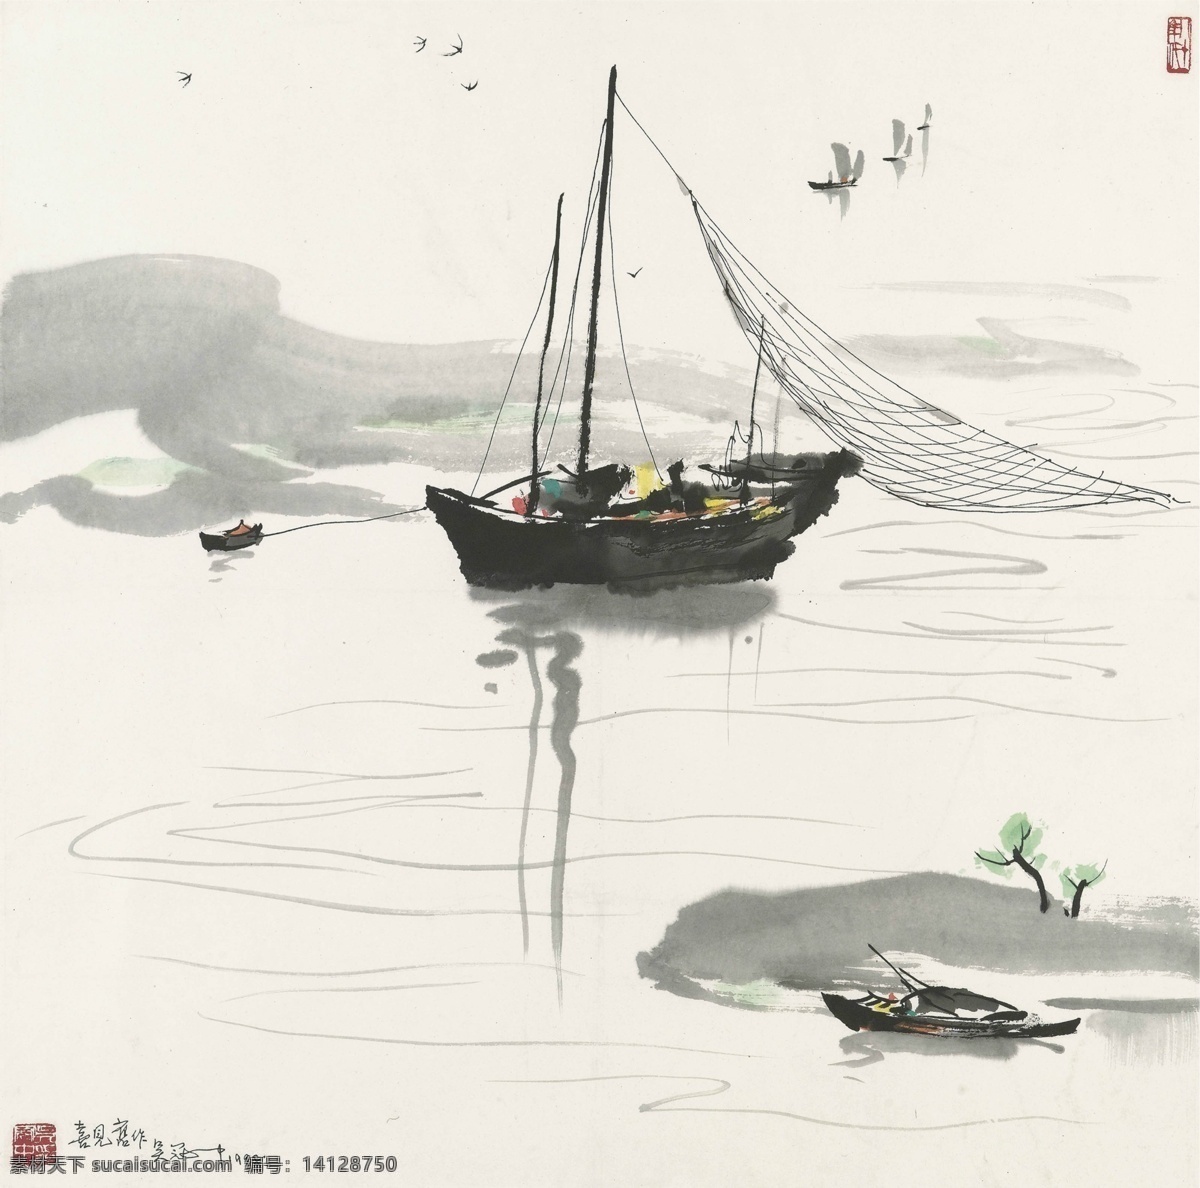 吴冠中 打渔 归来 渔船 风景图 中国画 高清 大图 绘画书法 文化艺术